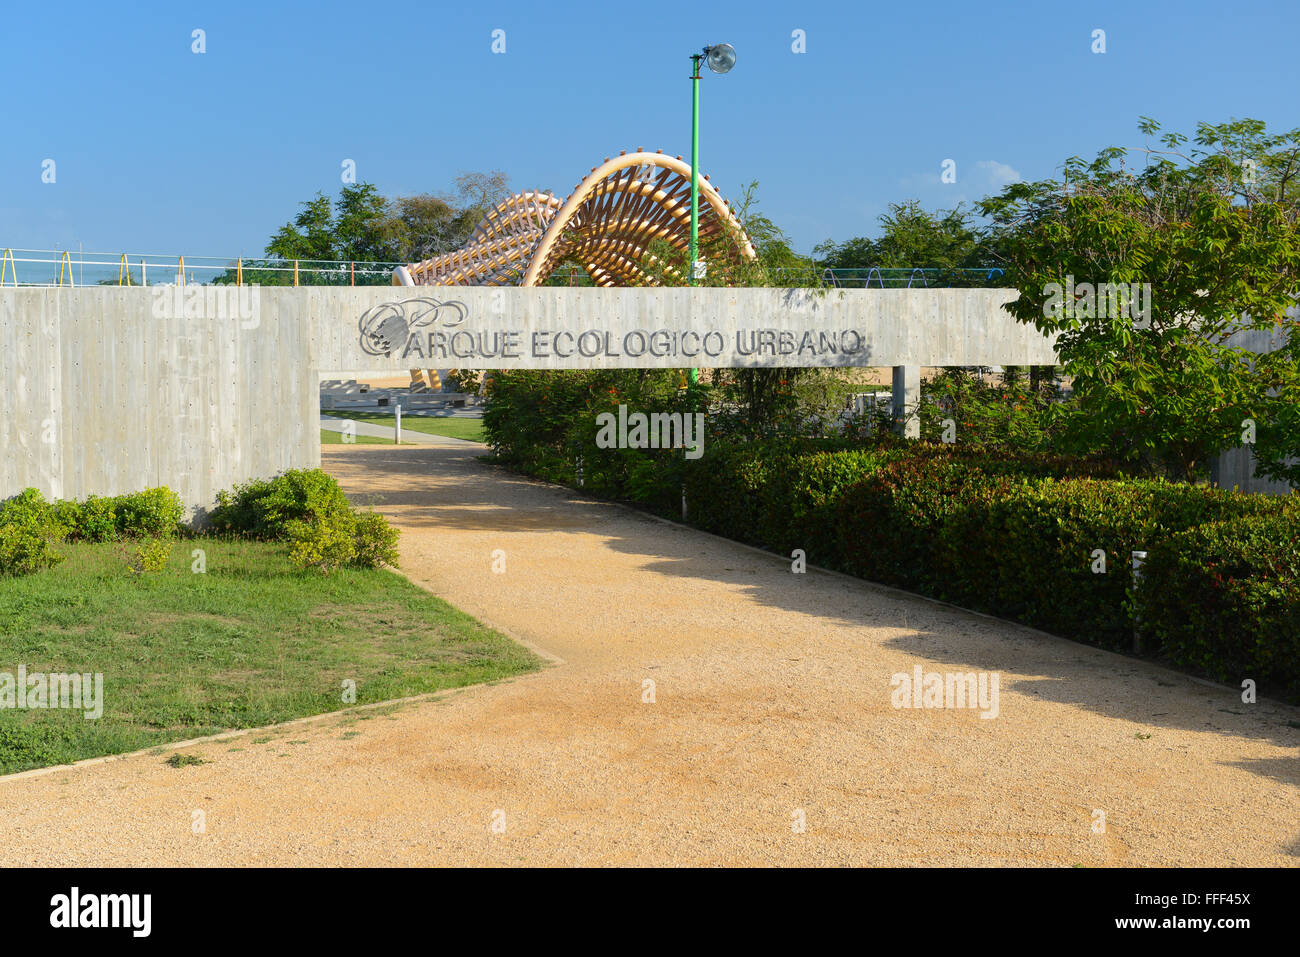 Urban Ecological Park (Parque Ecologico Urbano) entstand als grüne Lunge für die Stadt. Ponce, Puerto Rico. Karibik-Insel. Stockfoto